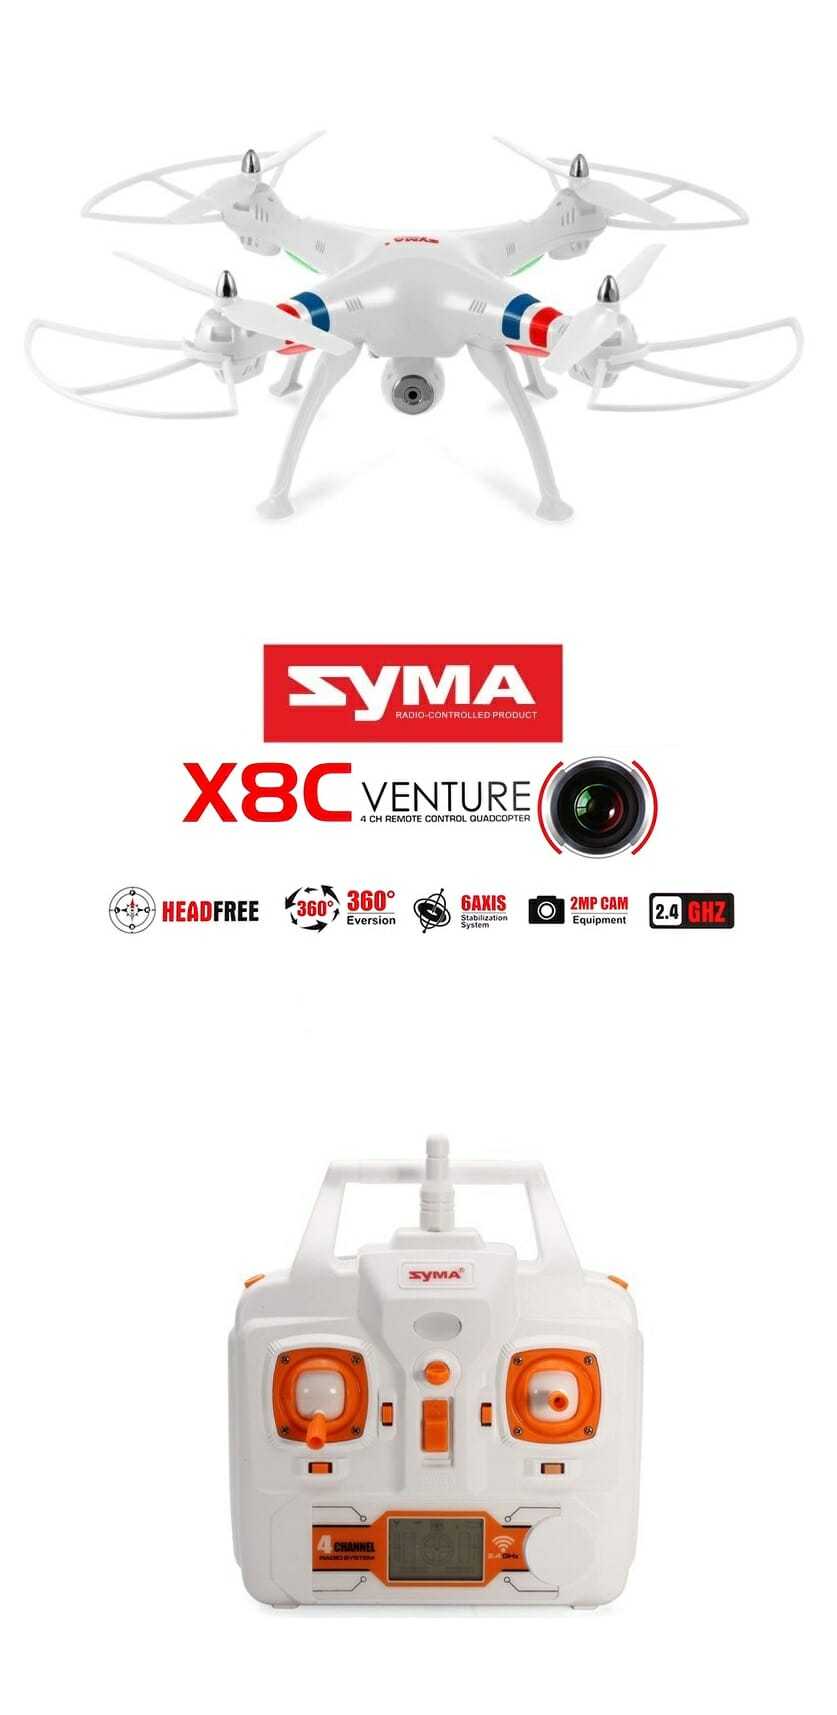 Лучшие квадрокоптеры syma — обзор хороших моделей дронов